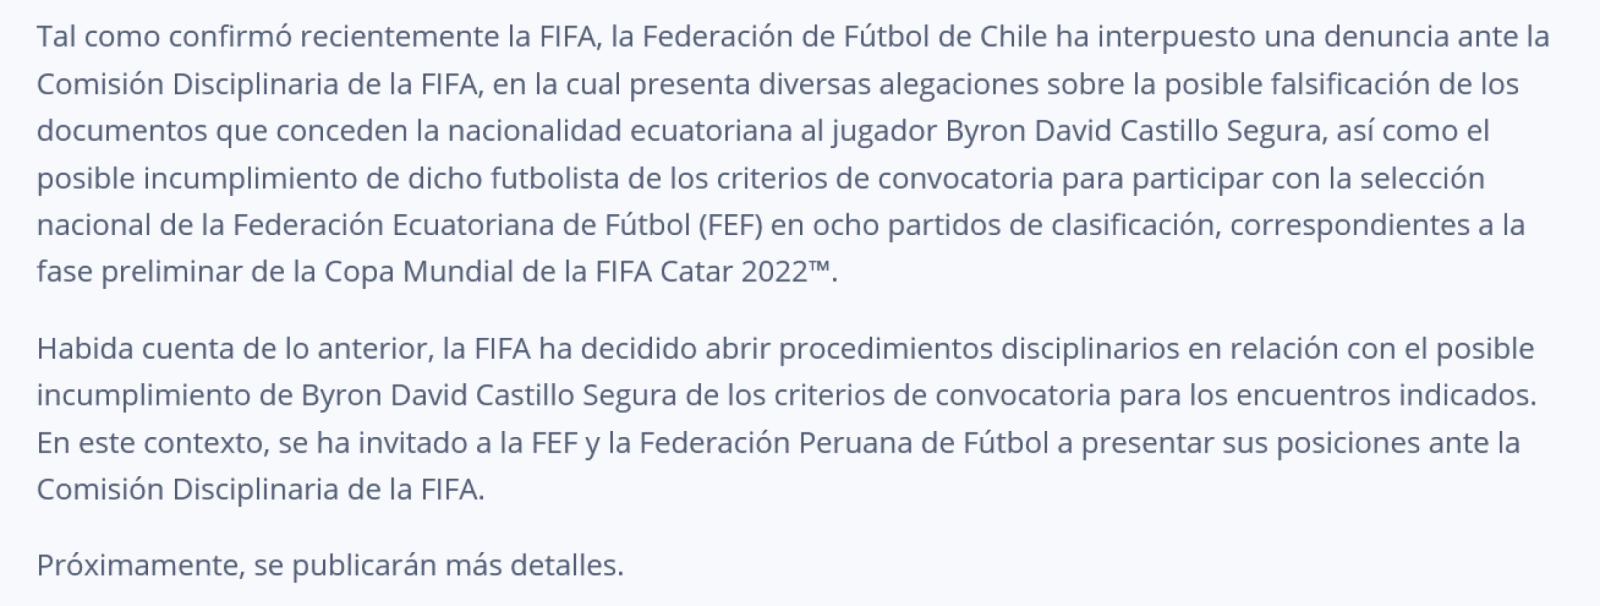 Imagen El comunicado de FIFA.